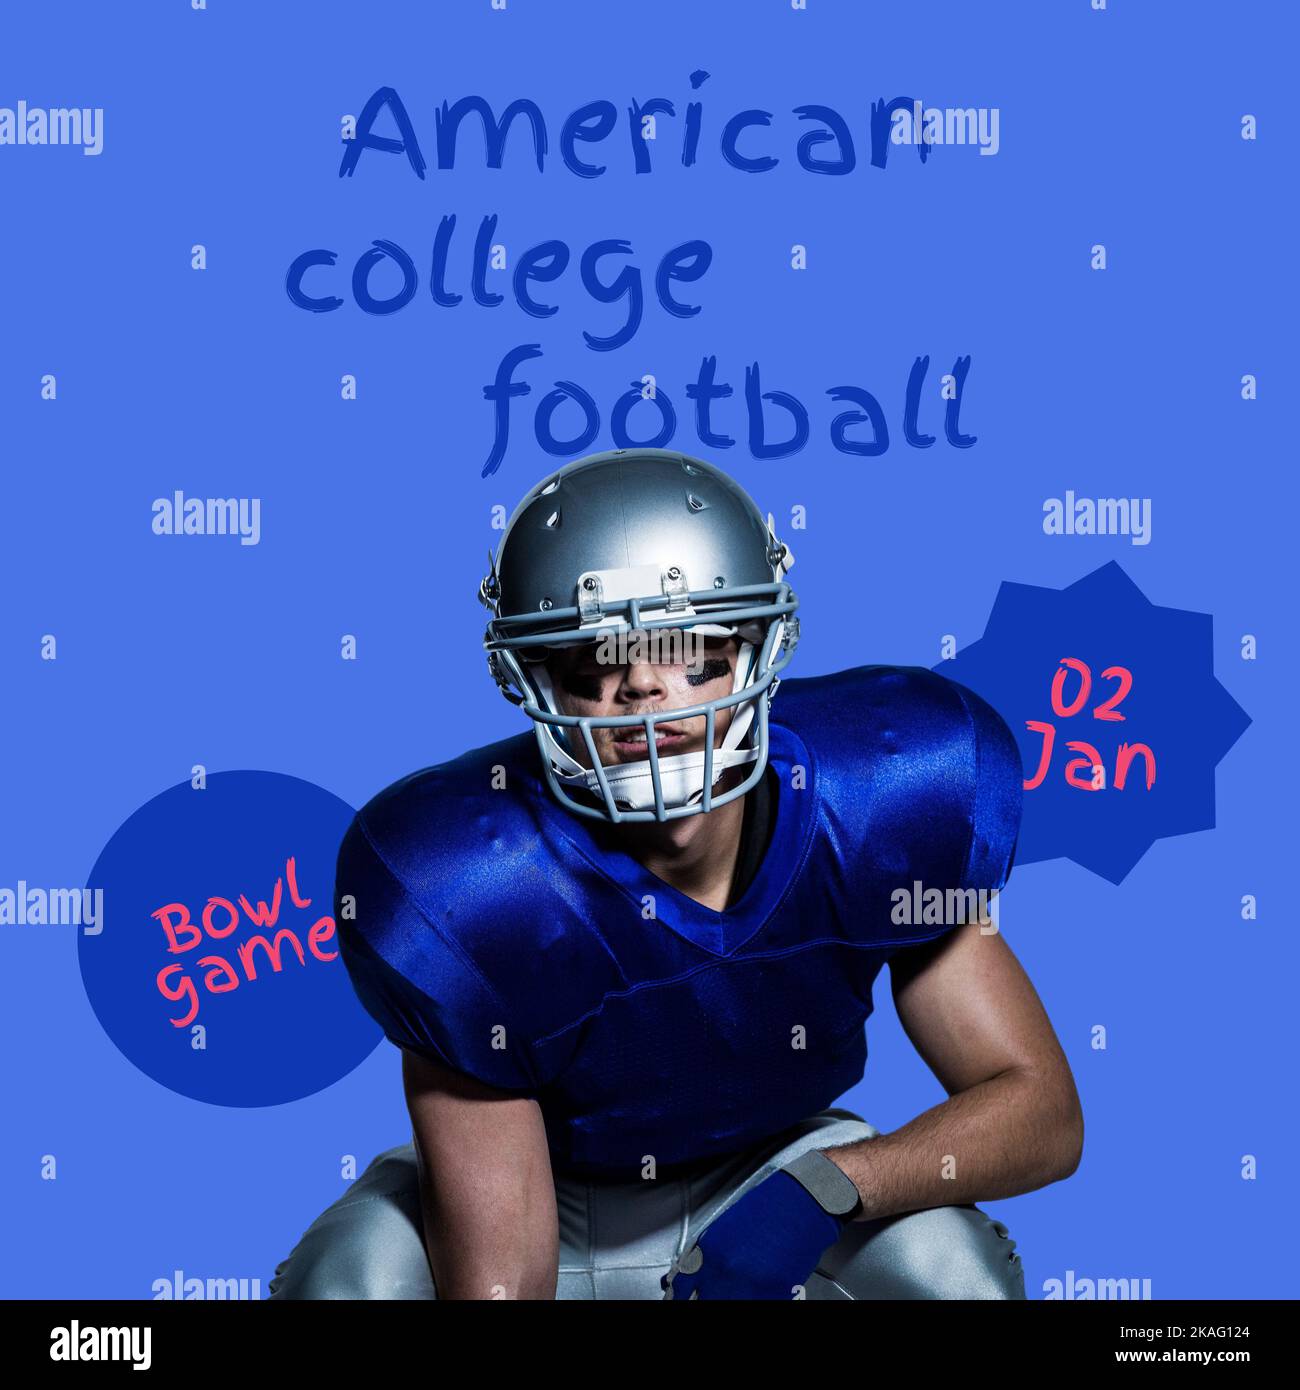 Komposition des amerikanischen College-Football-Textes über einem kaukasischen männlichen american-Football-Spieler Stockfoto